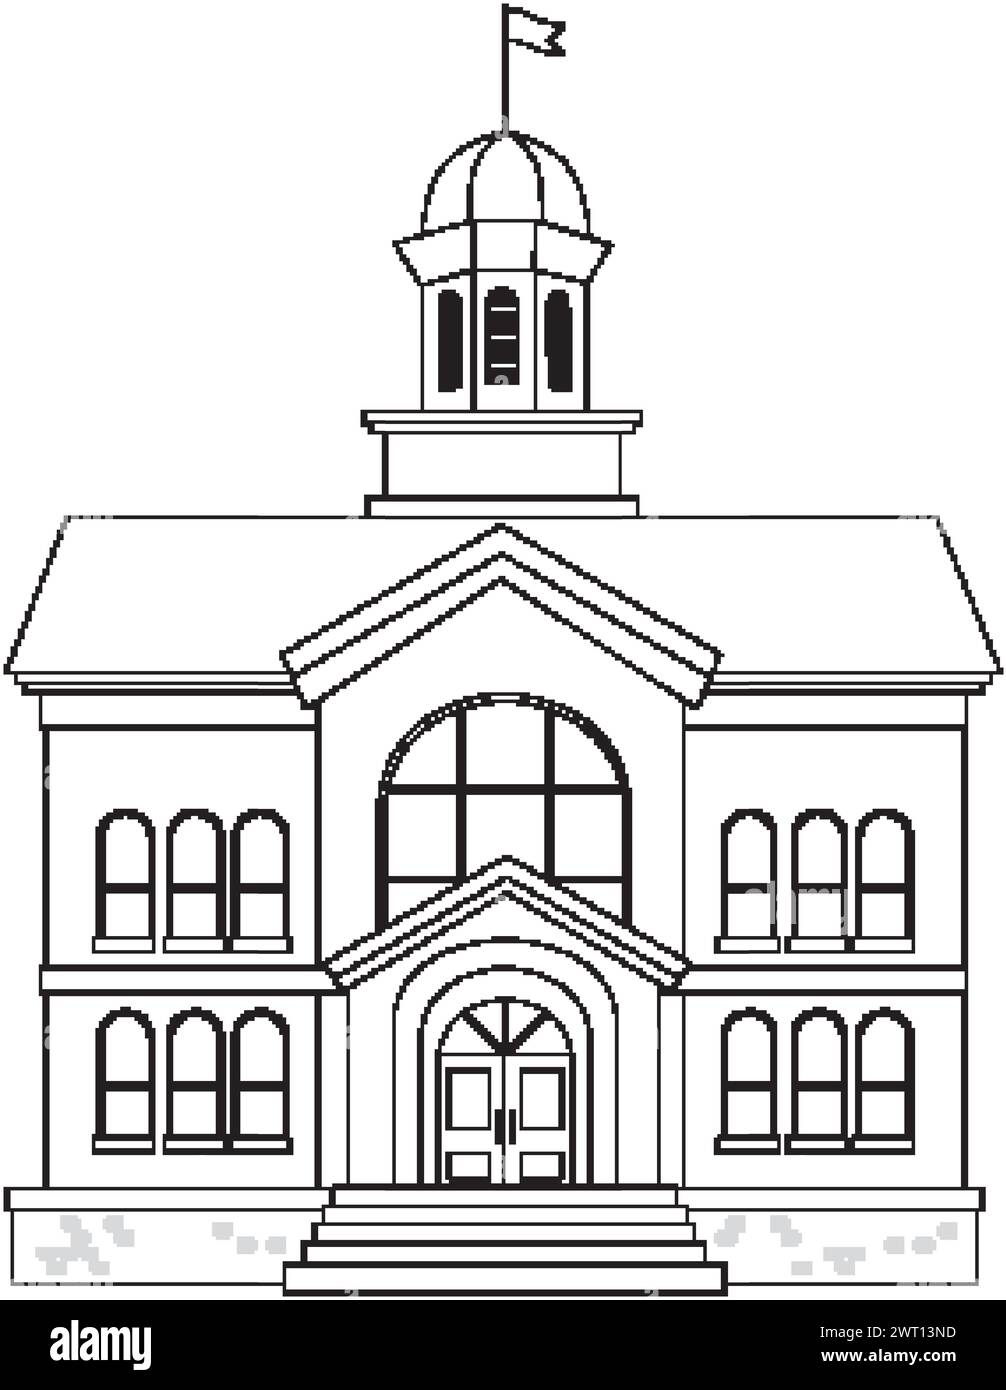 Arte de línea de un edificio gubernamental tradicional con una cúpula Ilustración del Vector